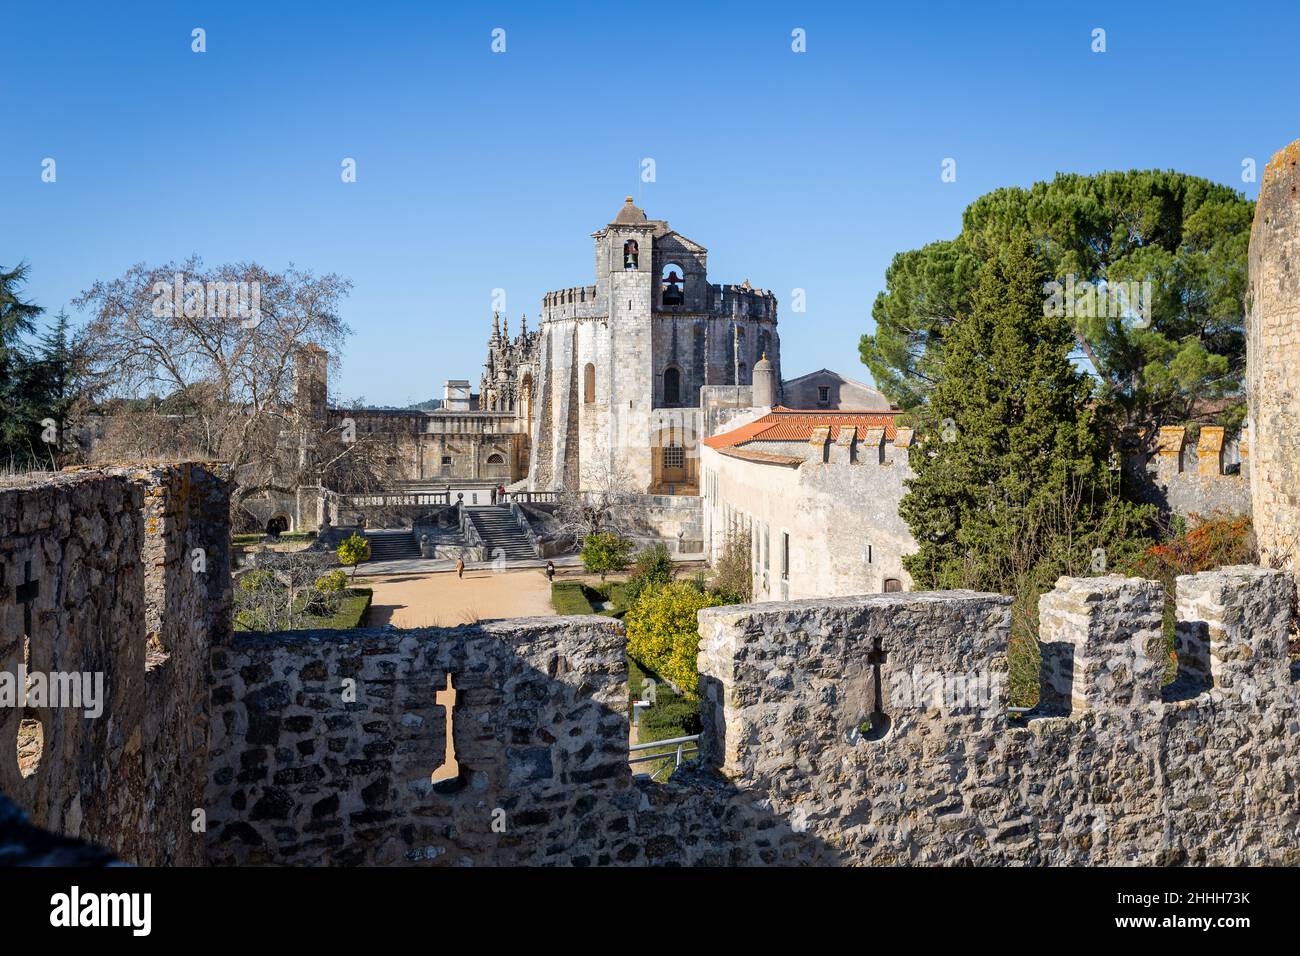 Convento de Cristo o 'Convento de Cristo' es un convento católico romano en la cima de la colina, en Tomar, Portugal, con una ornada esculpida estilo manuelina. Foto de stock